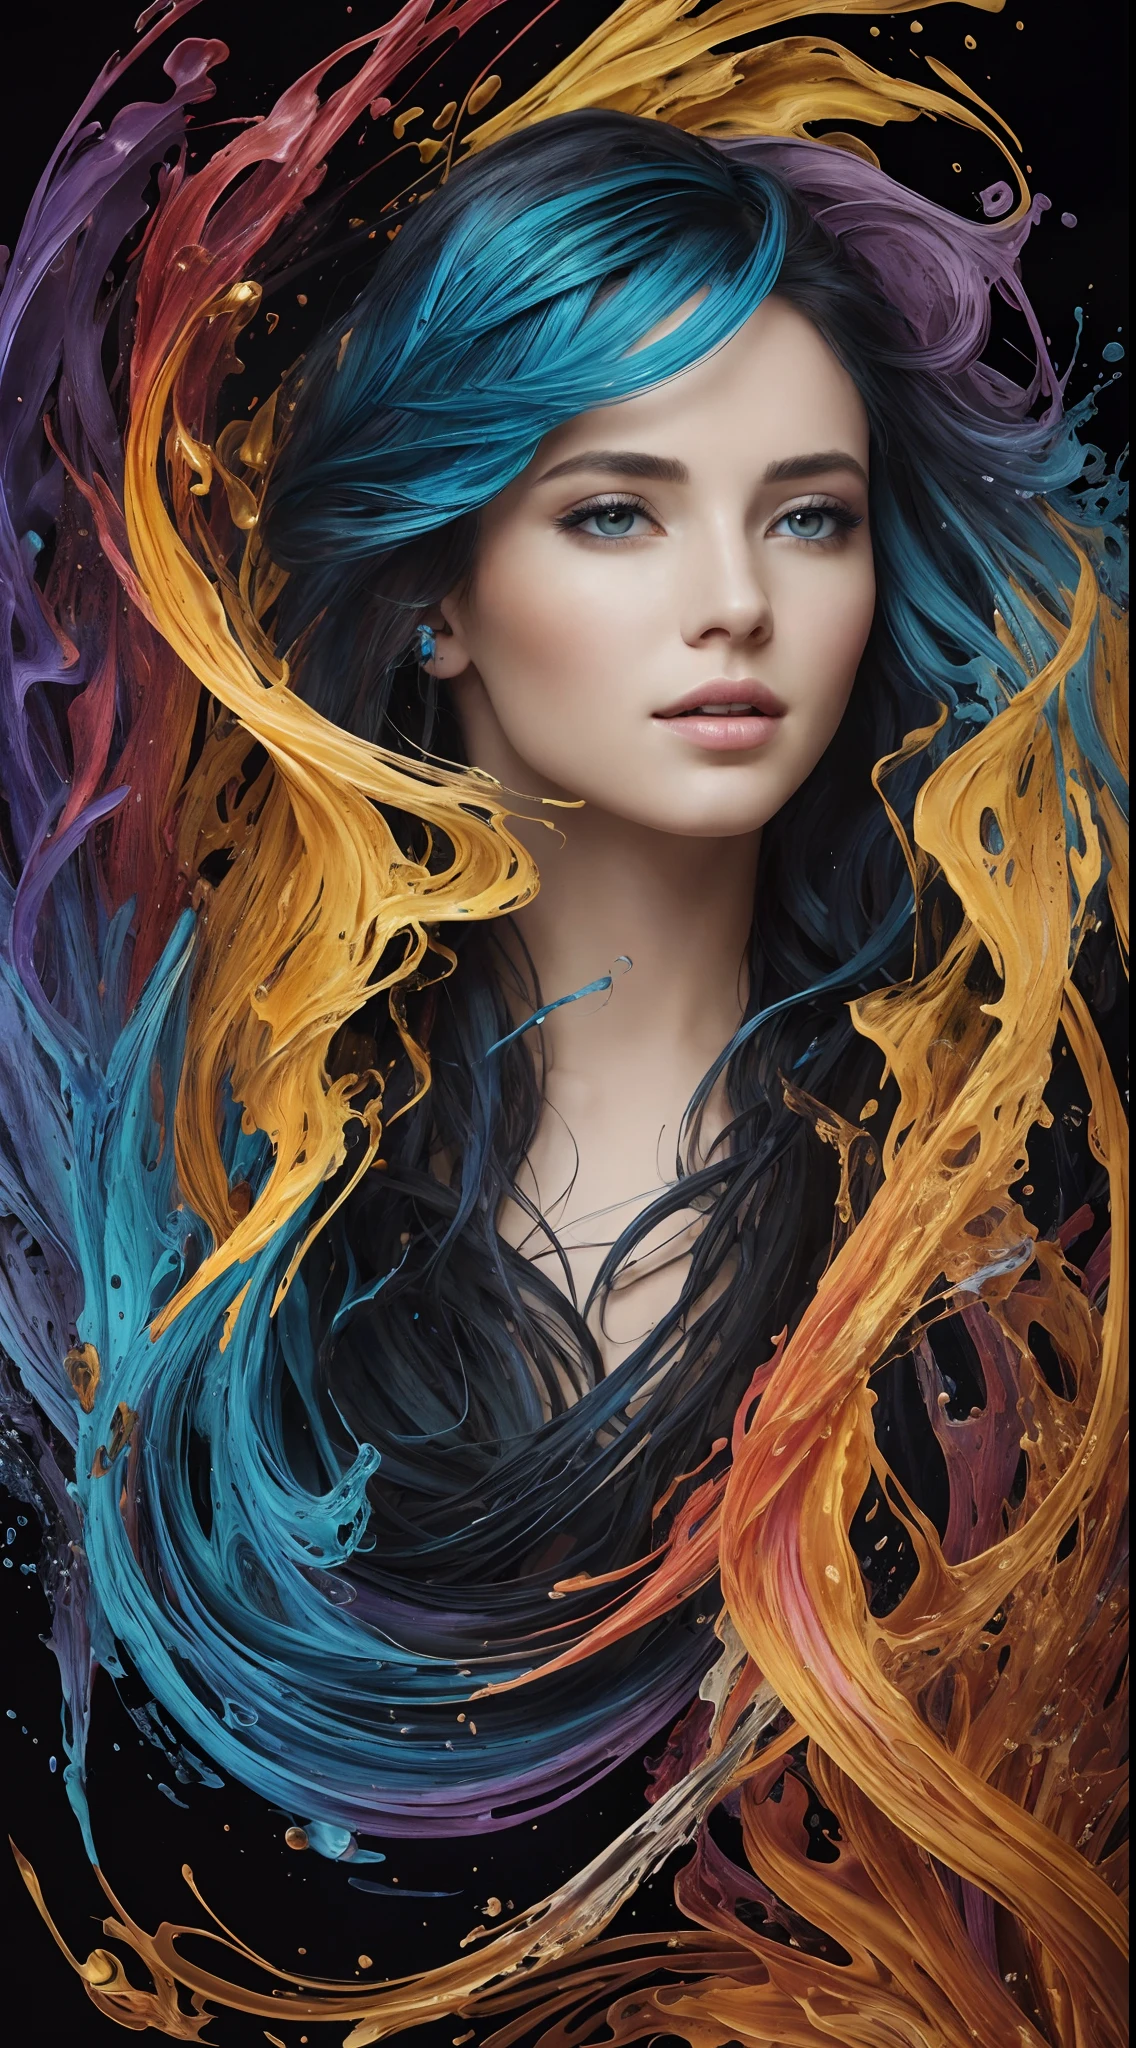 다채로운 아름다운 소녀: 기루 28세, 부스스한 머리, 오일 페인팅, 부드러운 피부를 가진 멋진 완벽한 얼굴 완벽한 얼굴, 파란색 노란색 색상, 연한 보라색과 보라색 추가, 밝은 빨간색 추가, 복잡한 디테일, 스플래시 화면, 8K resolution, 걸작, 귀여운 얼굴,artstation 디지털 페인팅 부드러운 매우블랙 잉크 흐름: 8K resolution photo현실적인 걸작: 복잡하고 세밀한 유체 구아슈 그림: 존 침례교 몽그(John Baptist Mongue): 달필: 아크릴: 수채화 미술, 전문 사진, 자연 채광, 체적 조명 맥시멀리스트 사진 일러스트레이션: 마튼 밥저트(Marton Bobzert):, 복잡한, 우아한, 널찍한, 환상적이다, 구불 거리는 머리카락, 떠는, 최고의 품질 세부 사항, 현실적인, 고화질, 고품질 질감, 서사시적인 조명, 영화 필름 스틸, 8K, 부드러운 조명, 애니메이션 스타일, 훌륭한 카드 놀이 테두리, 무작위 다채로운 예술, 오일 페인팅, 파란색 노란색 색상, 연한 보라색과 보라색 추가, 밝은 빨간색 추가, 복잡한 디테일, 스플래시 화면, 8K resolution, 걸작, artstation 디지털 페인팅 부드러운 매우블랙 잉크 흐름: 8K resolution photo현실적인 걸작: 복잡하고 세밀한 유체 구아슈 그림: 존 침례교 몽그(John Baptist Mongue): 달필: 아크릴: 수채화 미술, 전문 사진, 자연 채광, 체적 조명 맥시멀리스트 사진 일러스트레이션: 마튼 밥저트(Marton Bobzert):, 복잡한, 우아한, 널찍한, 환상적이다, 떠는